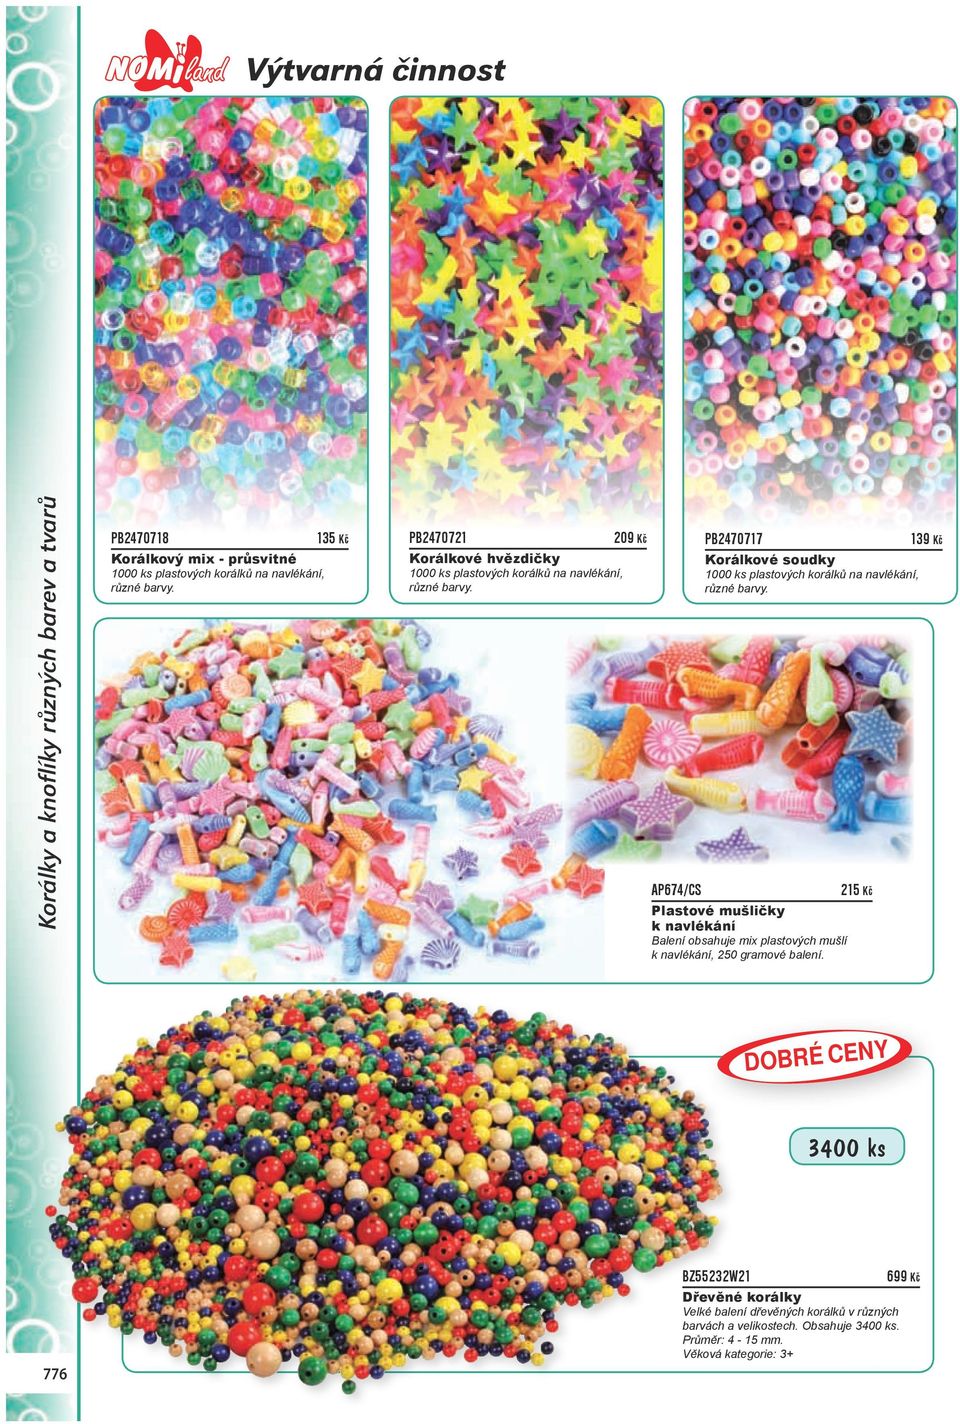 PB2470717 139 Kč Korálkové soudky 1000 ks plastových korálků na navlékání, různé barvy.